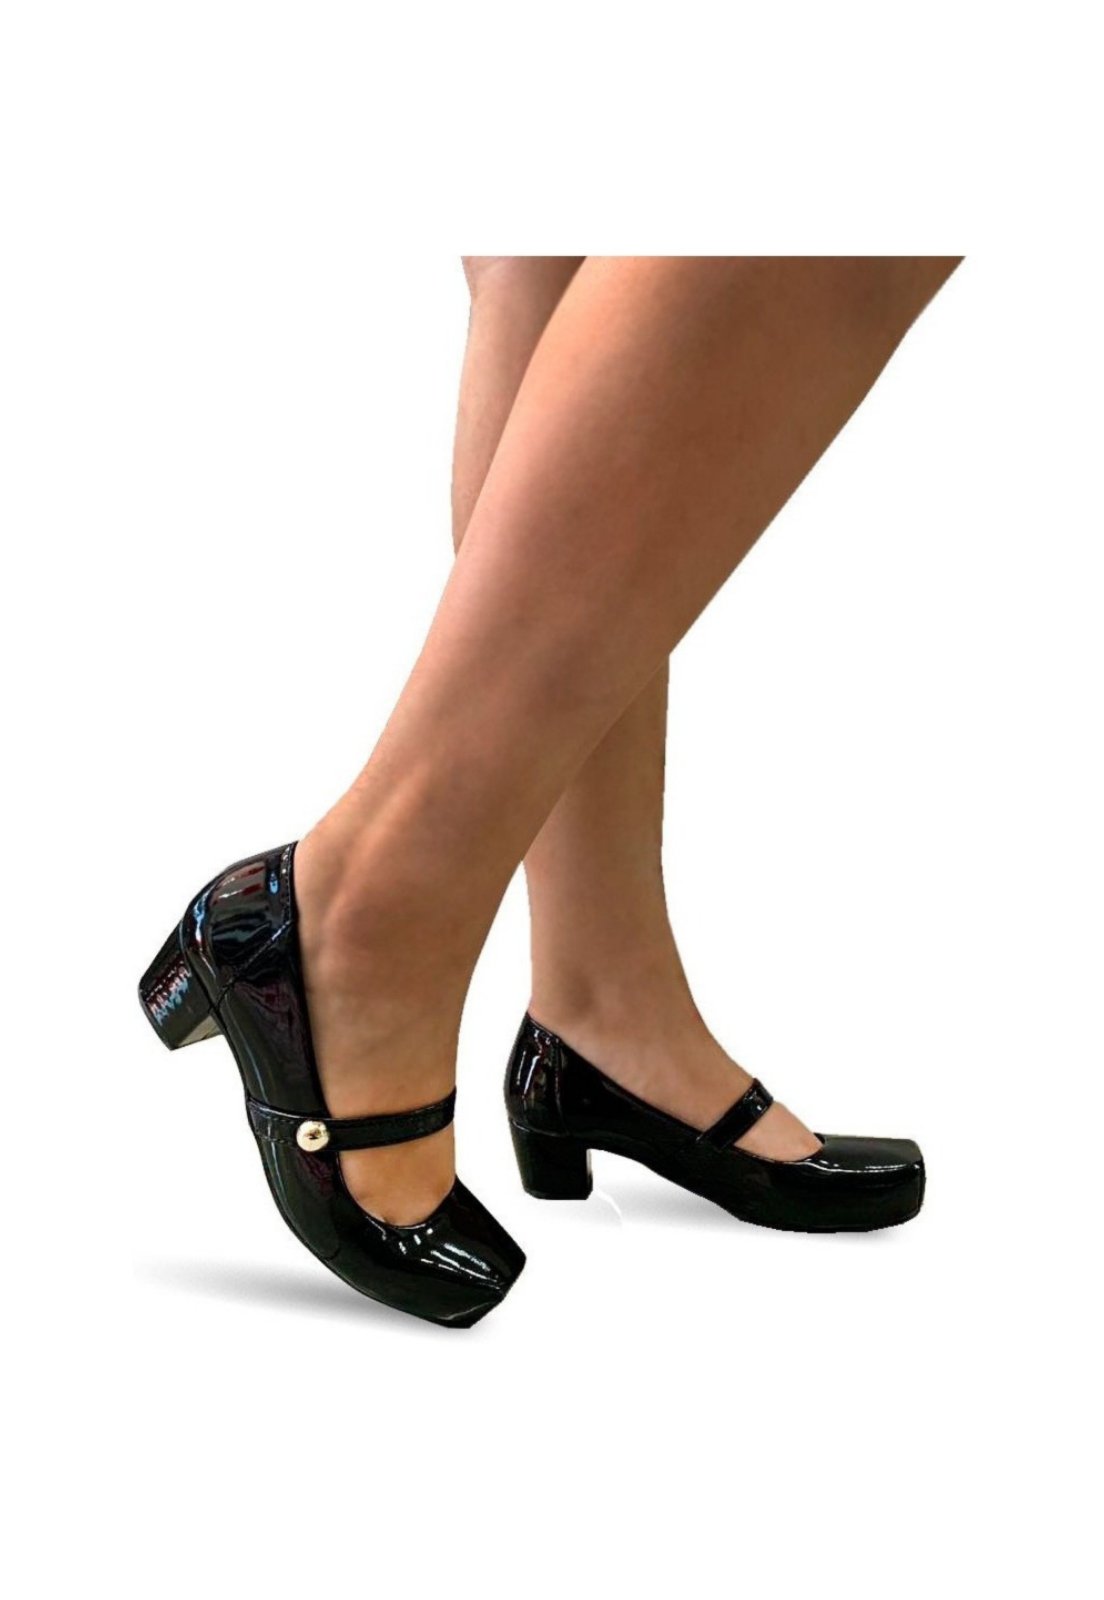 Calçados Femininos - Sapatos Femininos, Dafiti